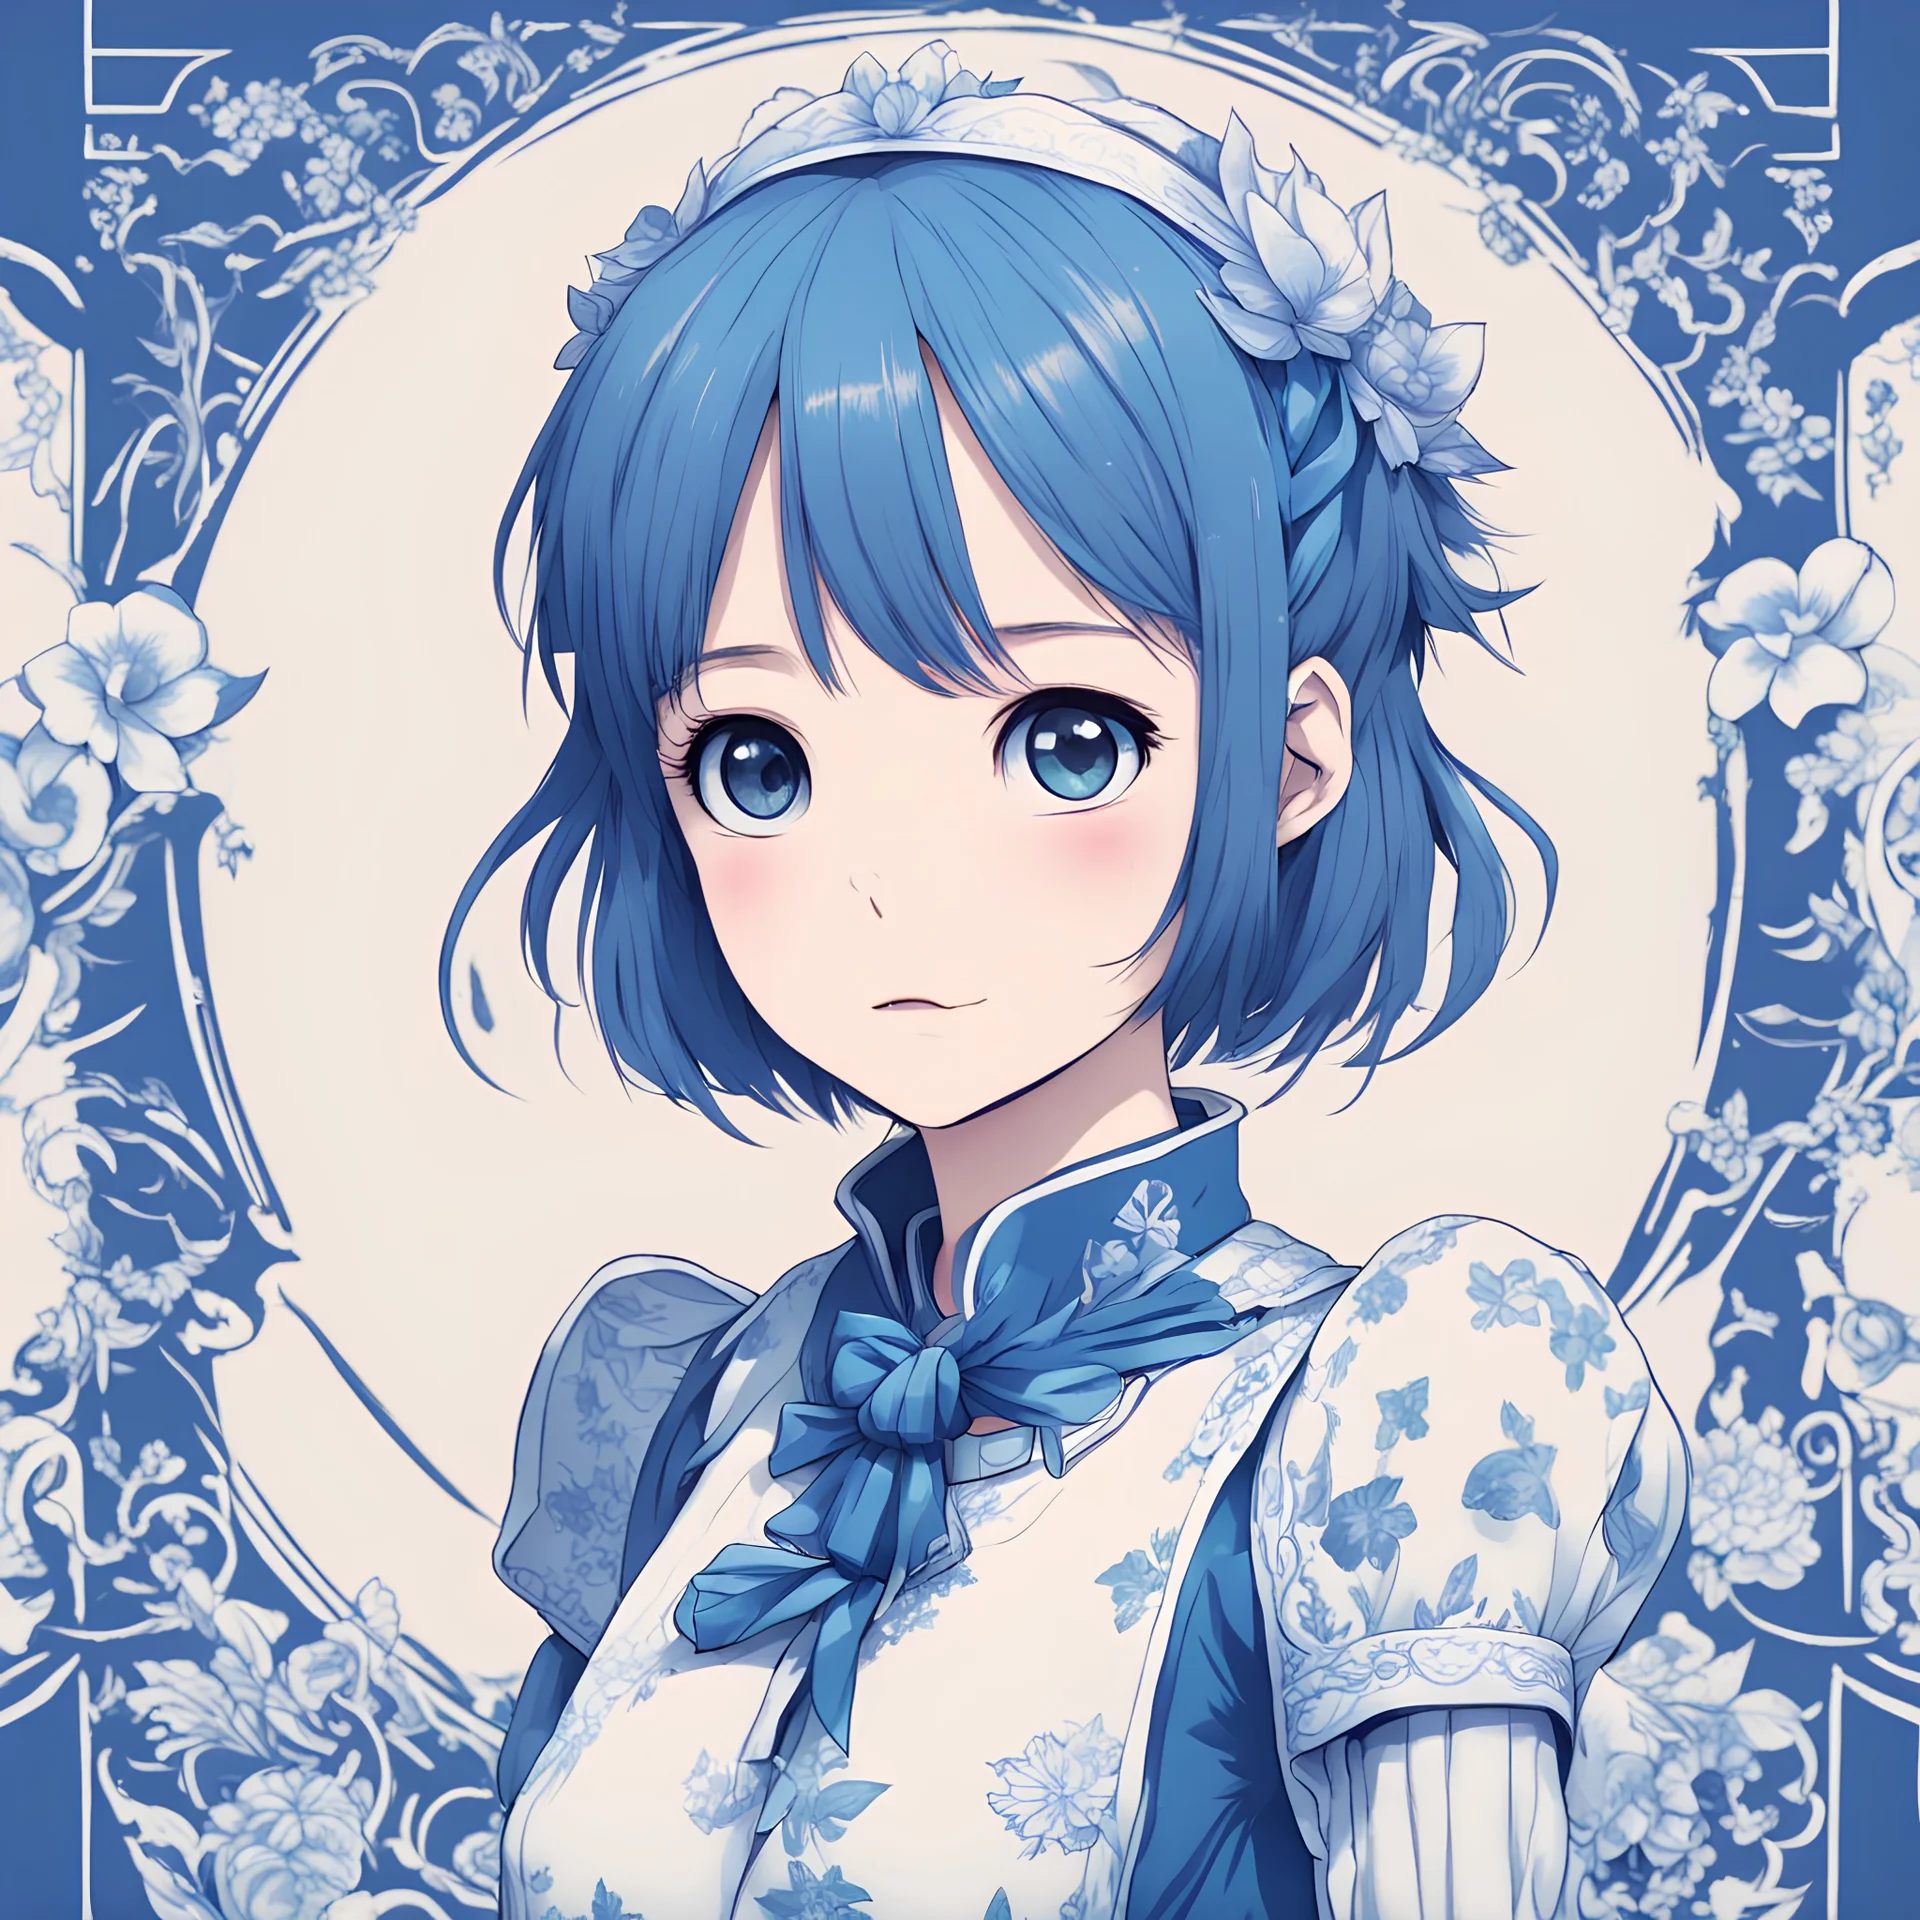 Arisa's Leadership in cute blue print art style